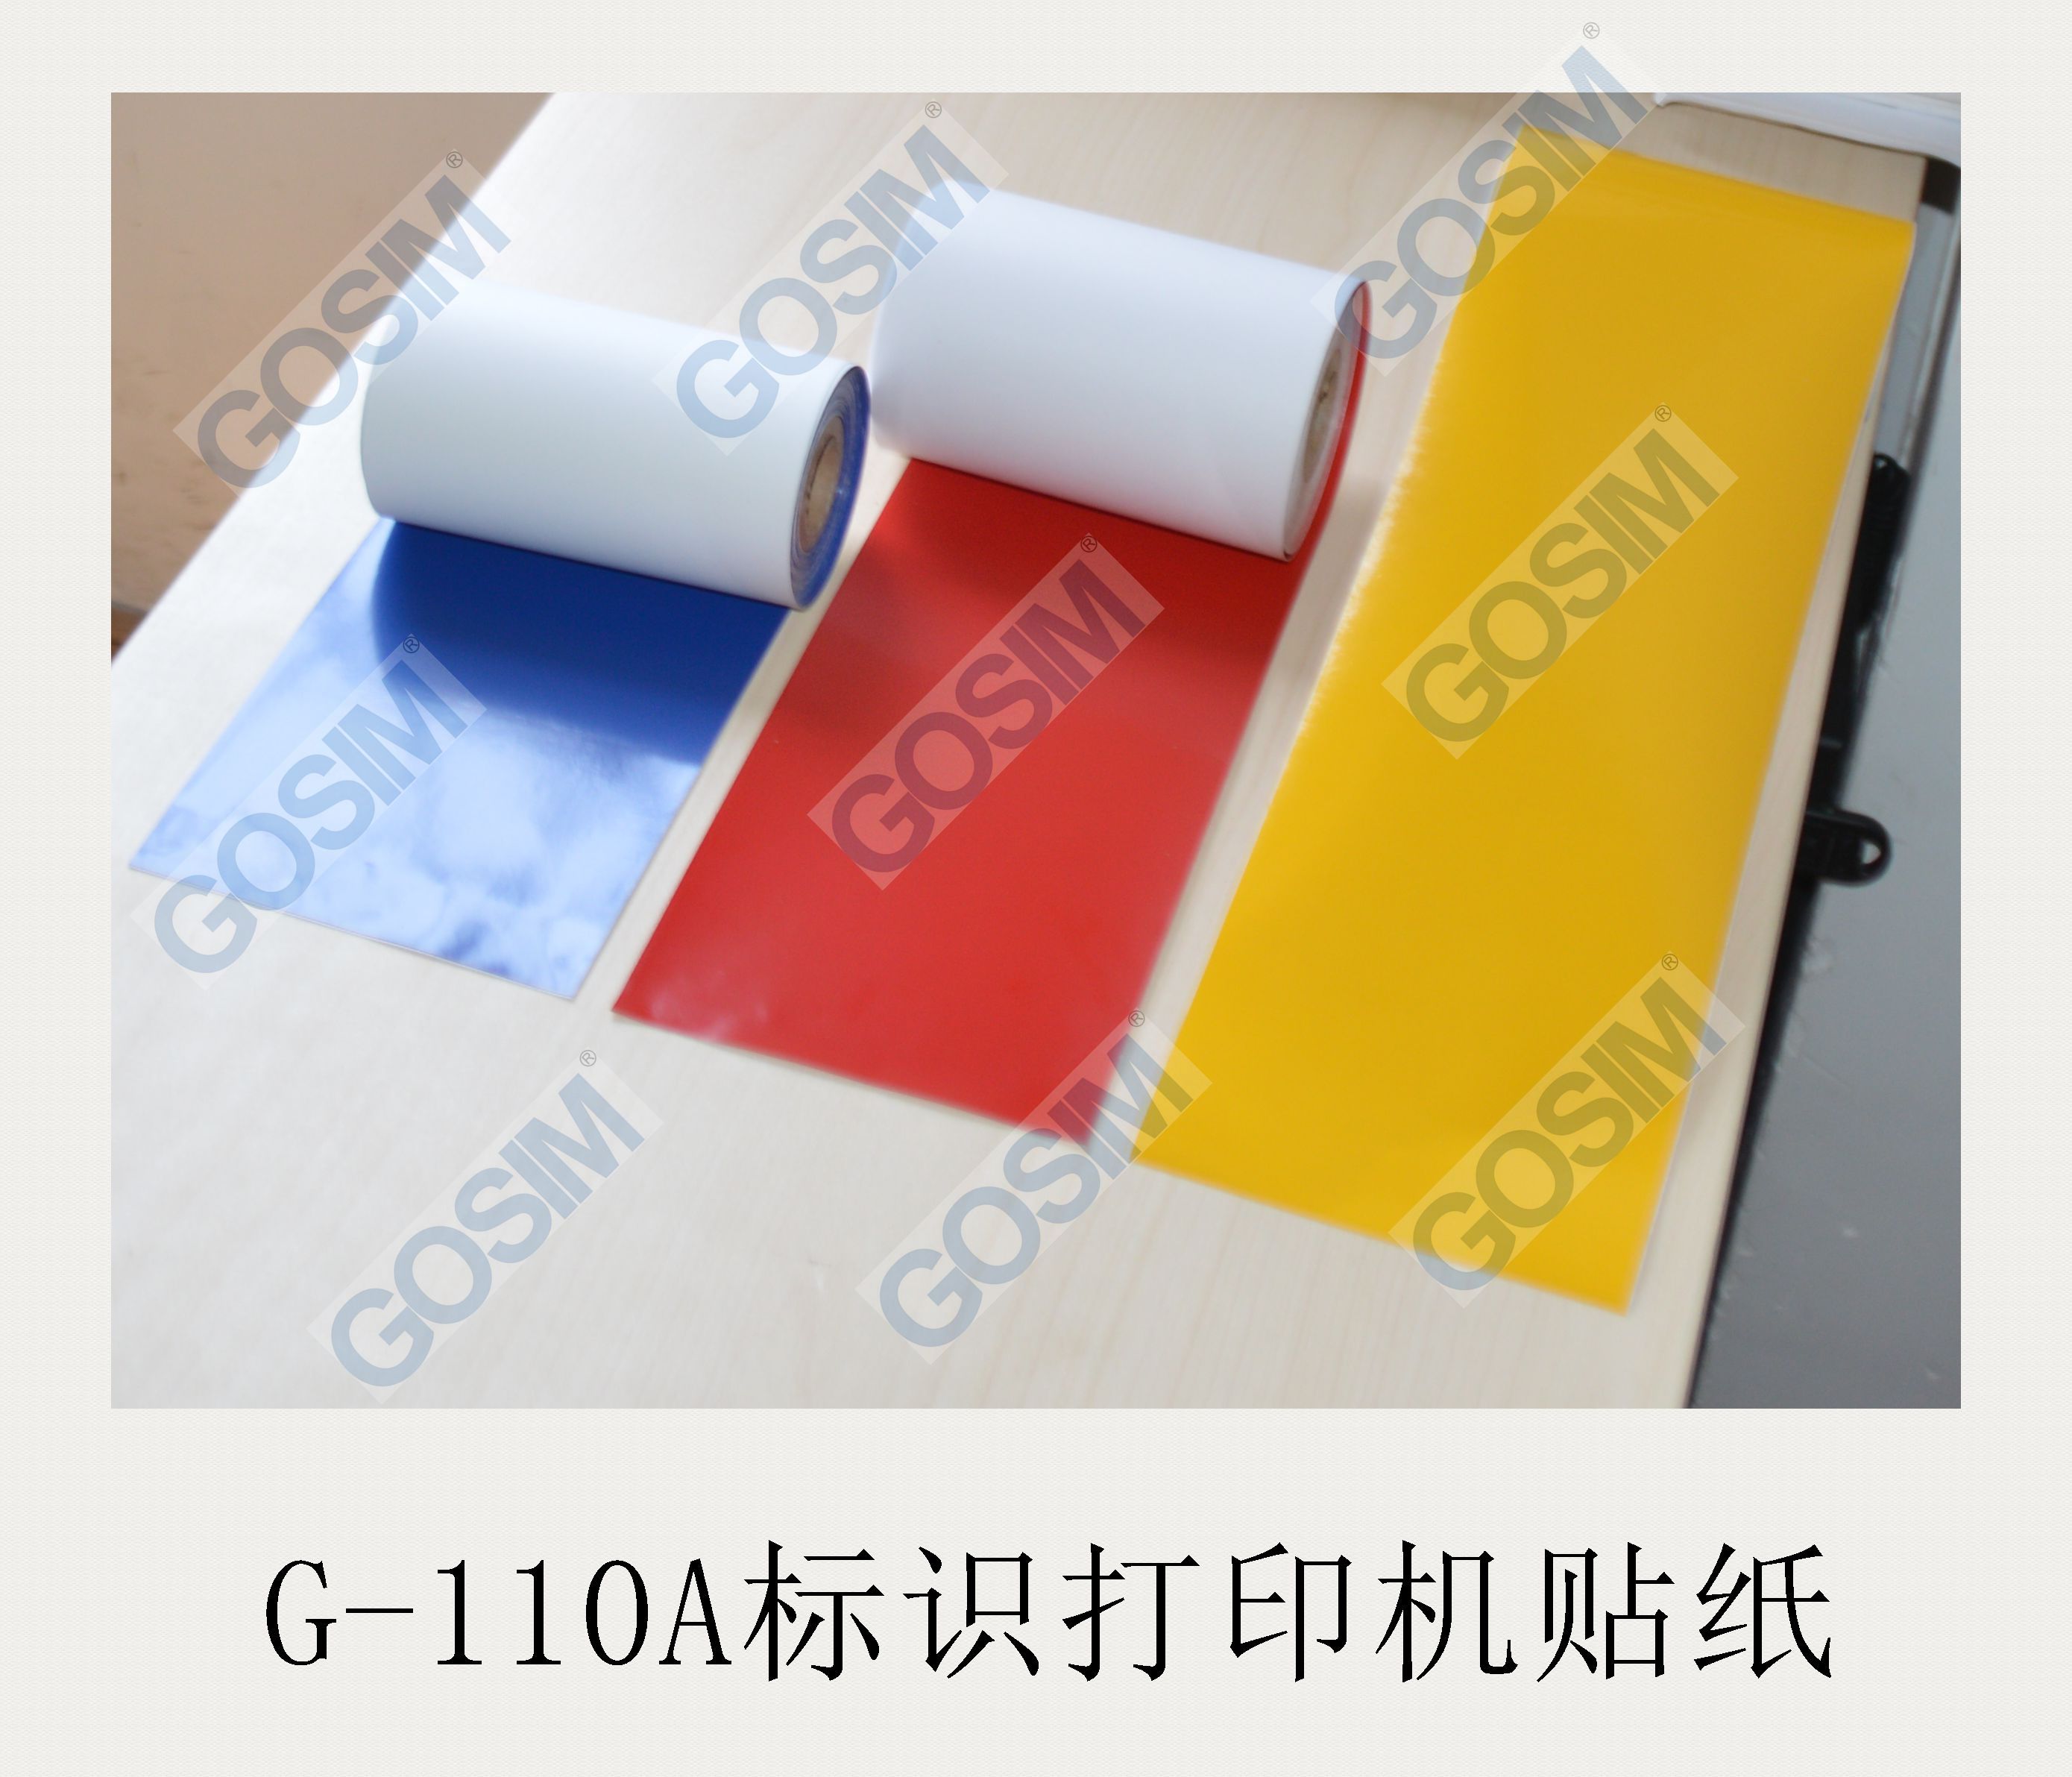 广州市禁止吸烟多功能标识打印机厂家